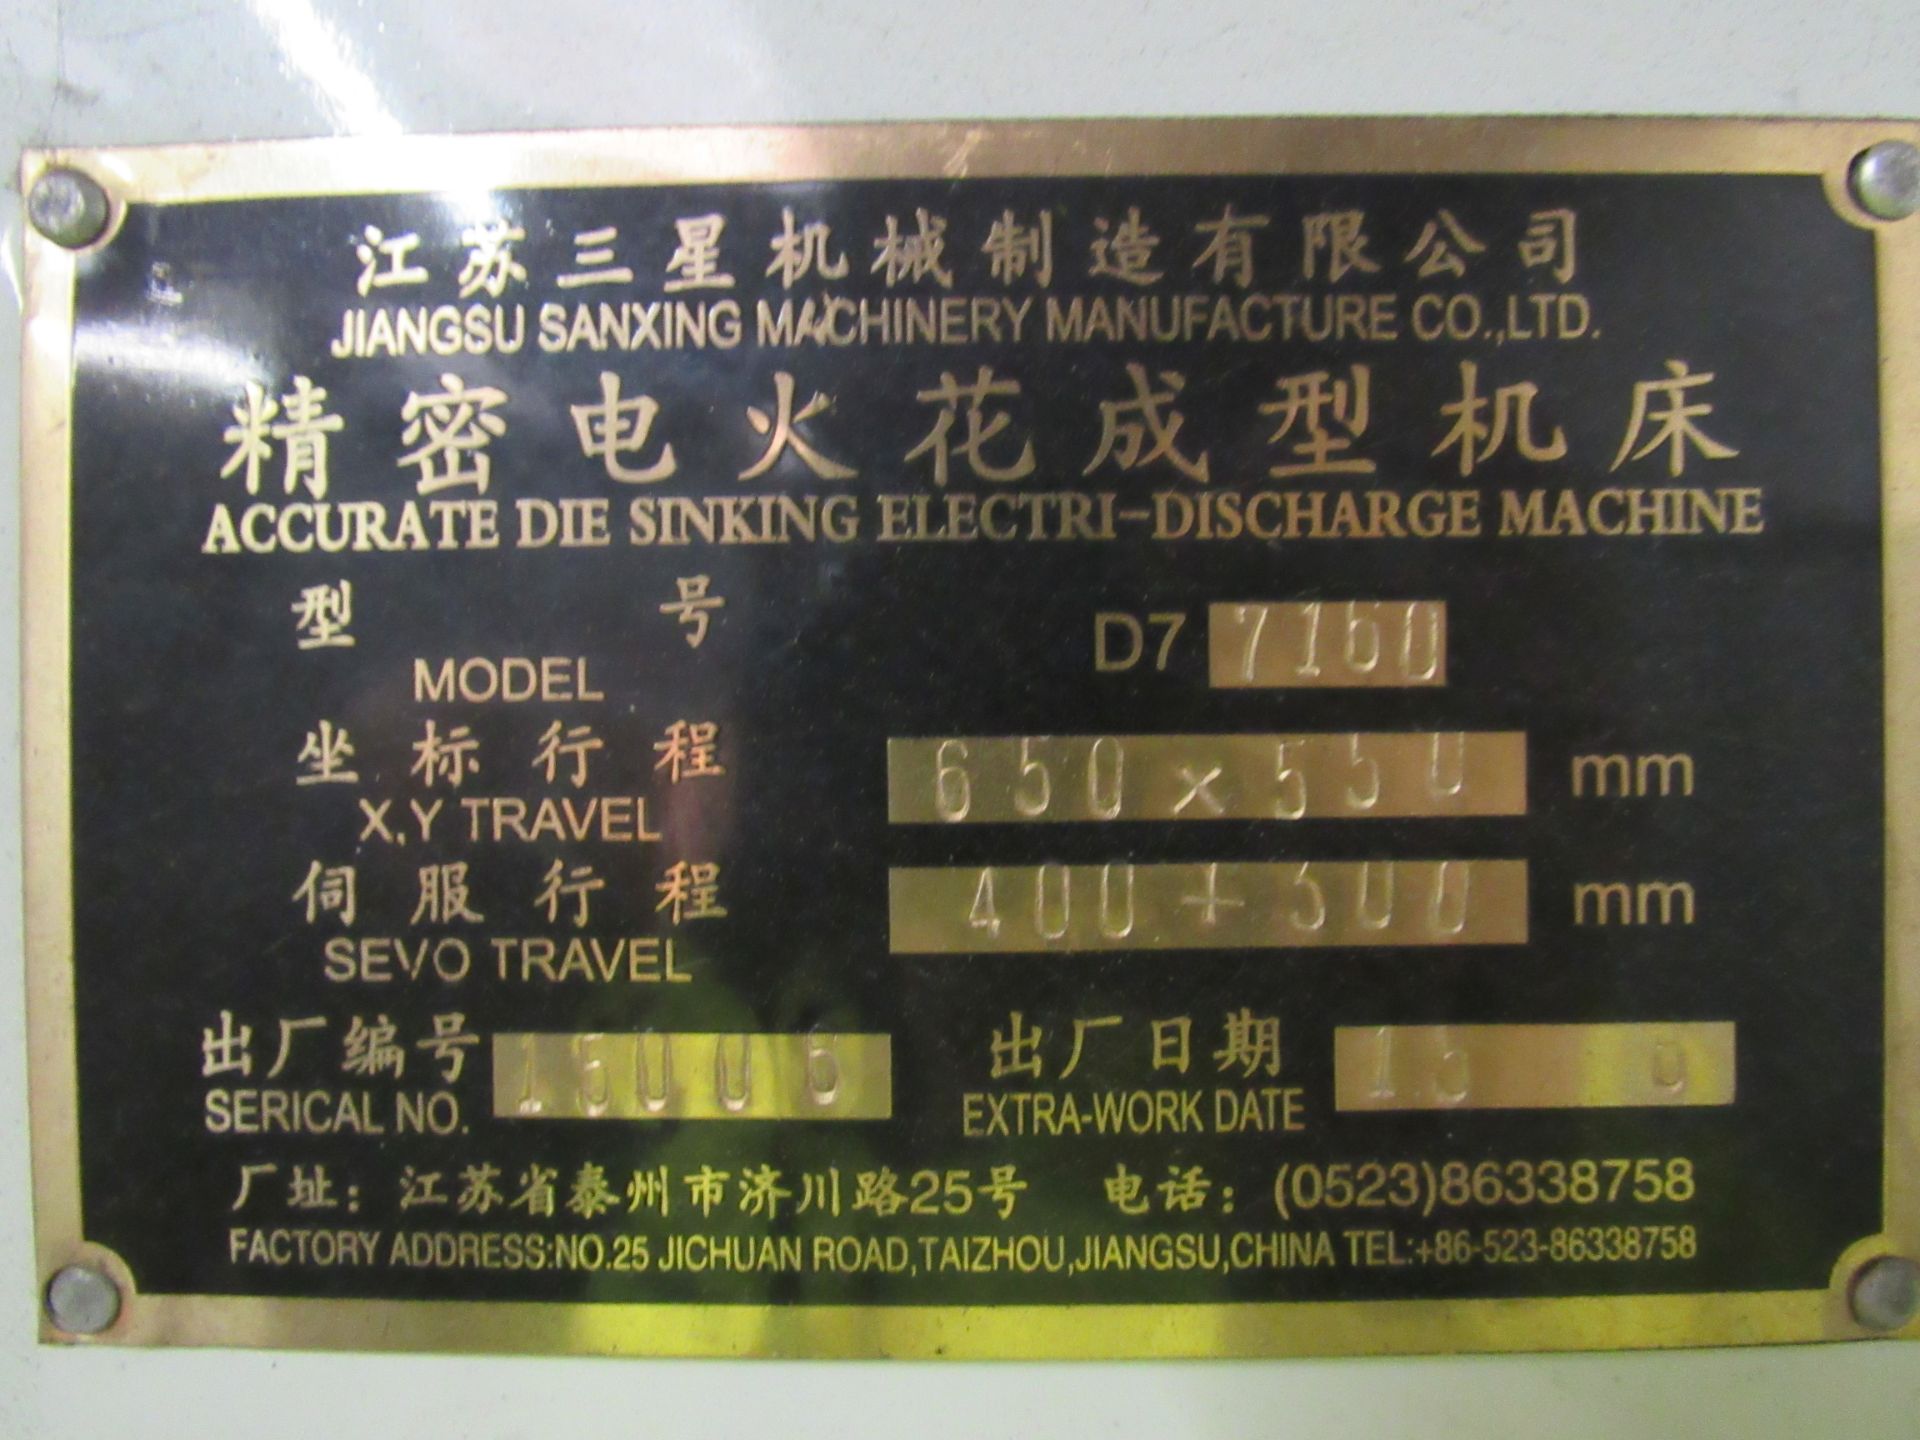 Jiangsu Sanxing D7/7/160 Electro Die Sinker, Seria - Image 6 of 10